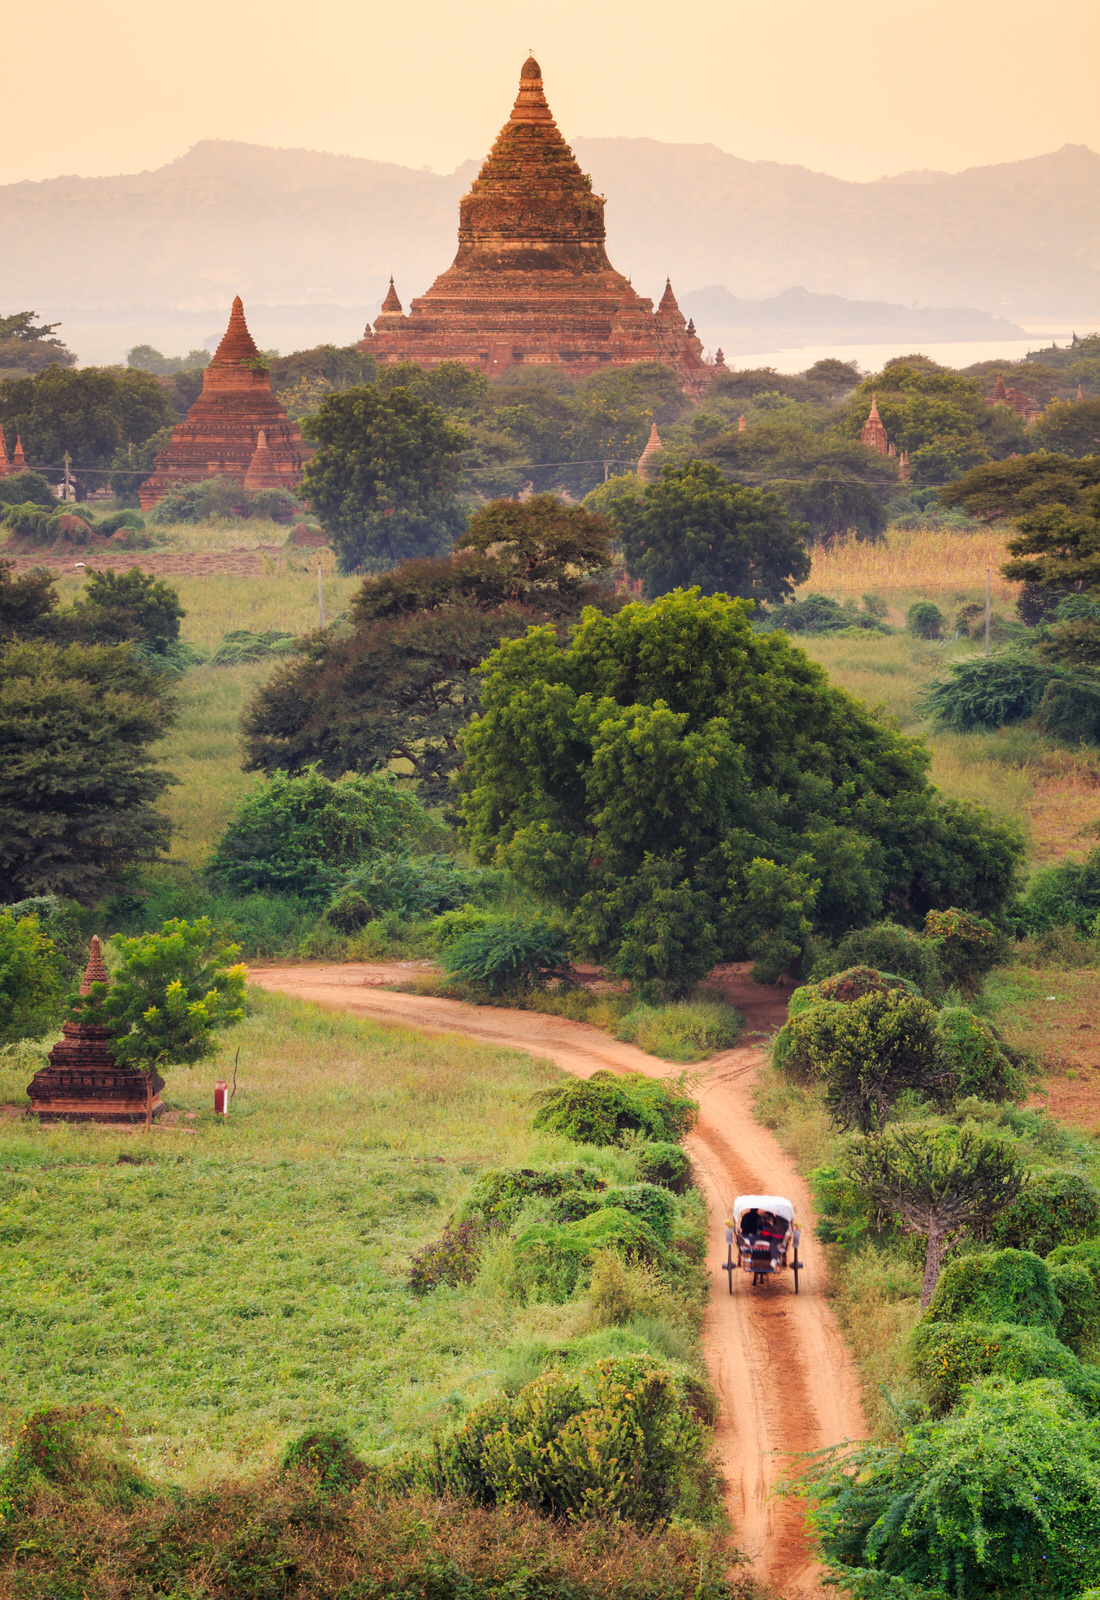 The Temples of bagan at sunrise, Bagan(Pagan), Myanmar